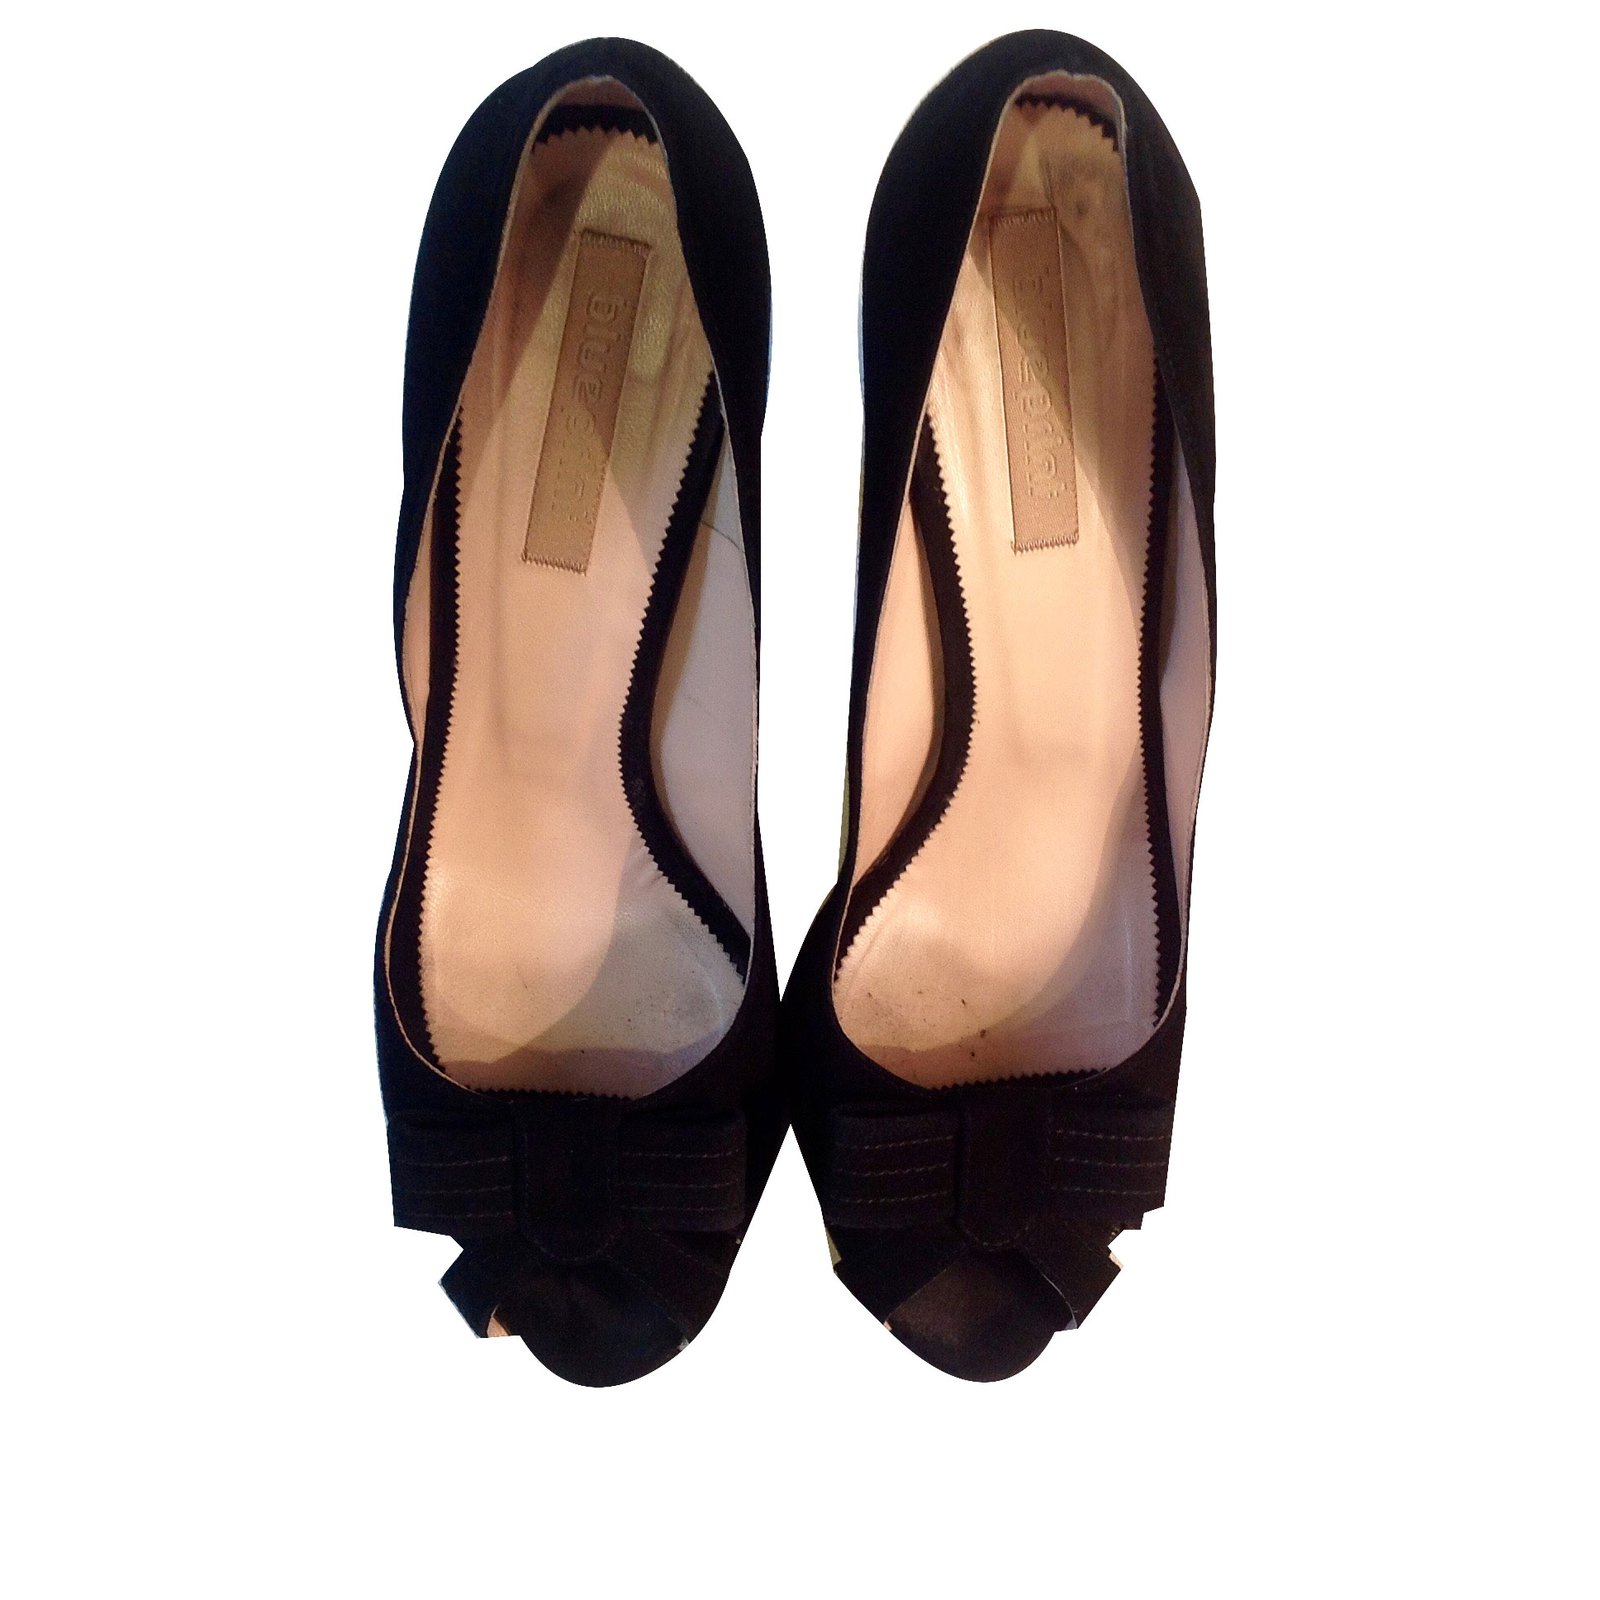 black wedge pumps heels